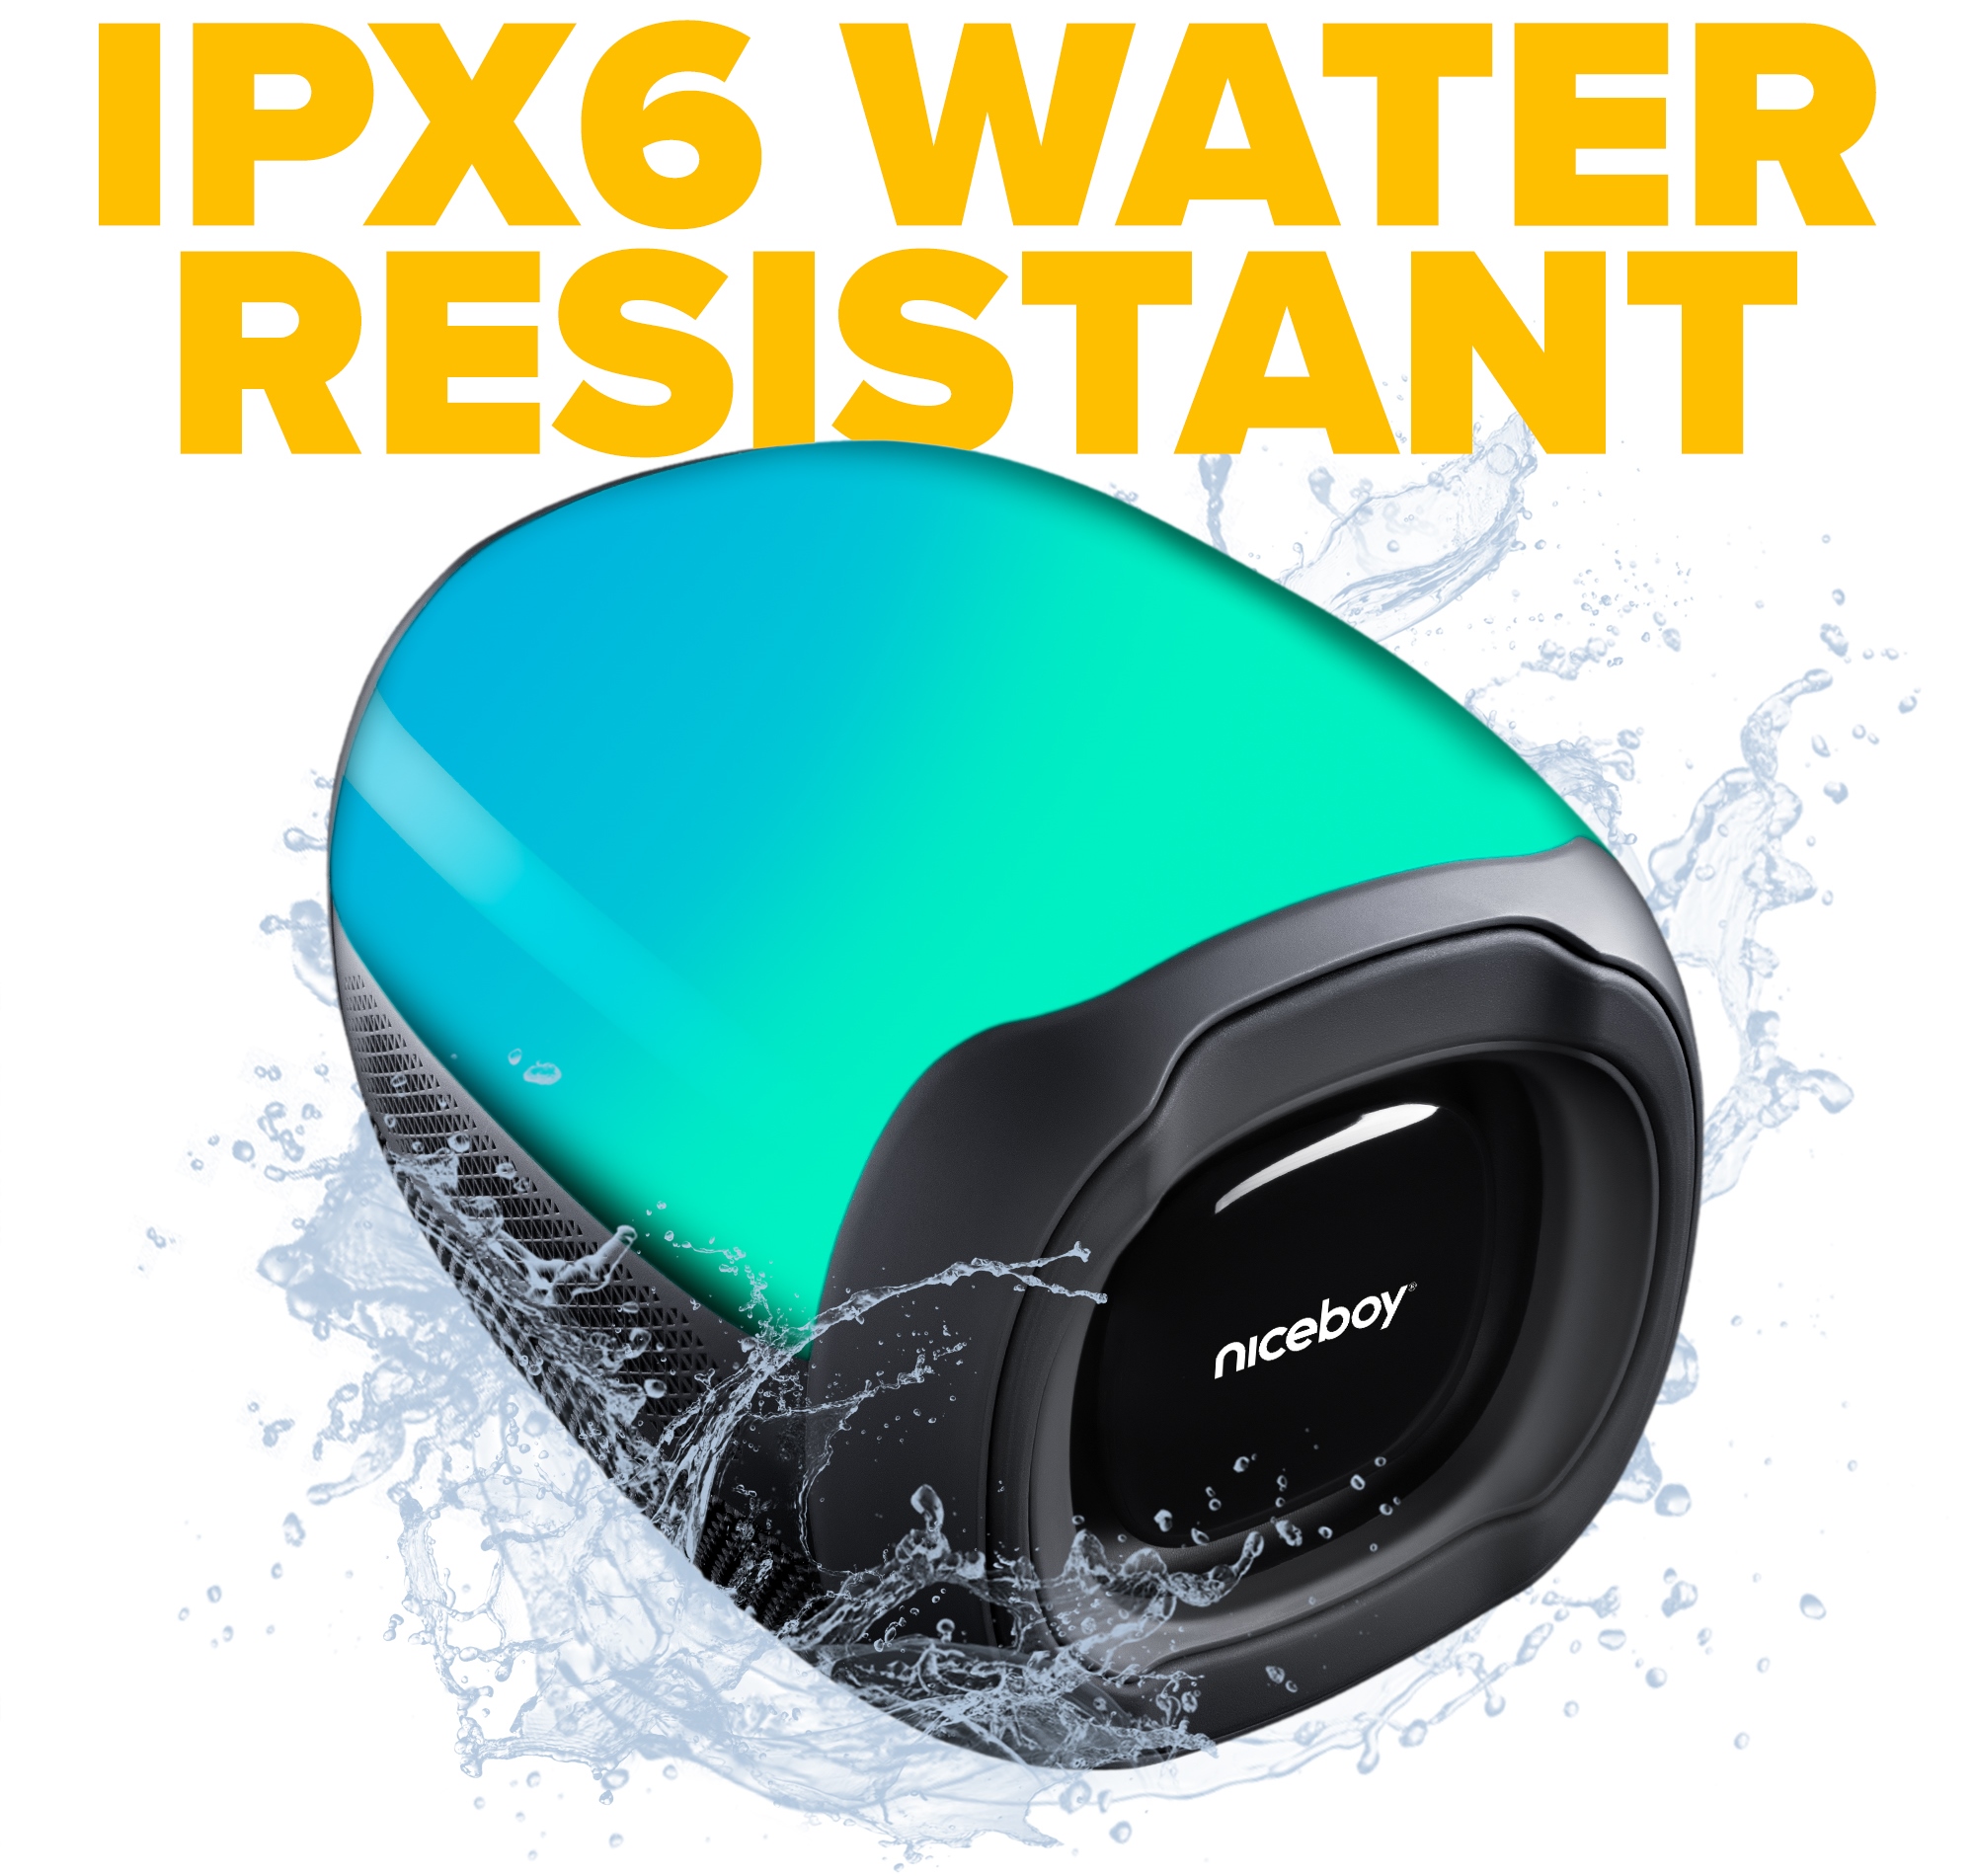 A Niceboy Raze Neon hangszóró IPX6 tanúsítvánnyal rendelkezik, így fokozottan ellenáll az intenzív fröccsenő víznek, így tökéletes a kültéri használatra.